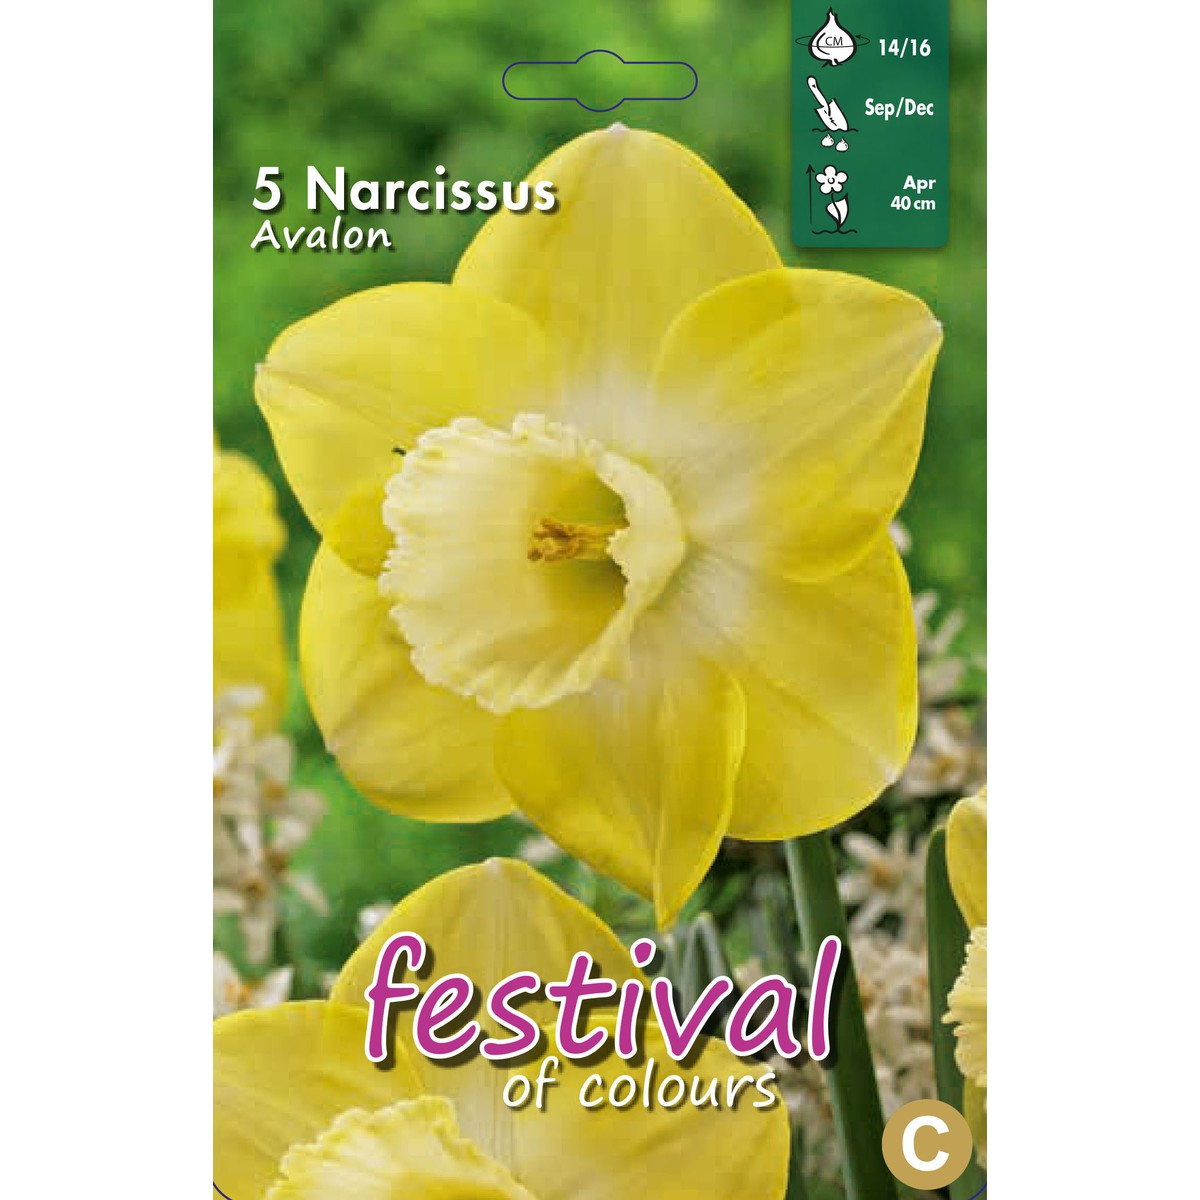   Narcisses Avalon 14/16  12 pcs 14/16